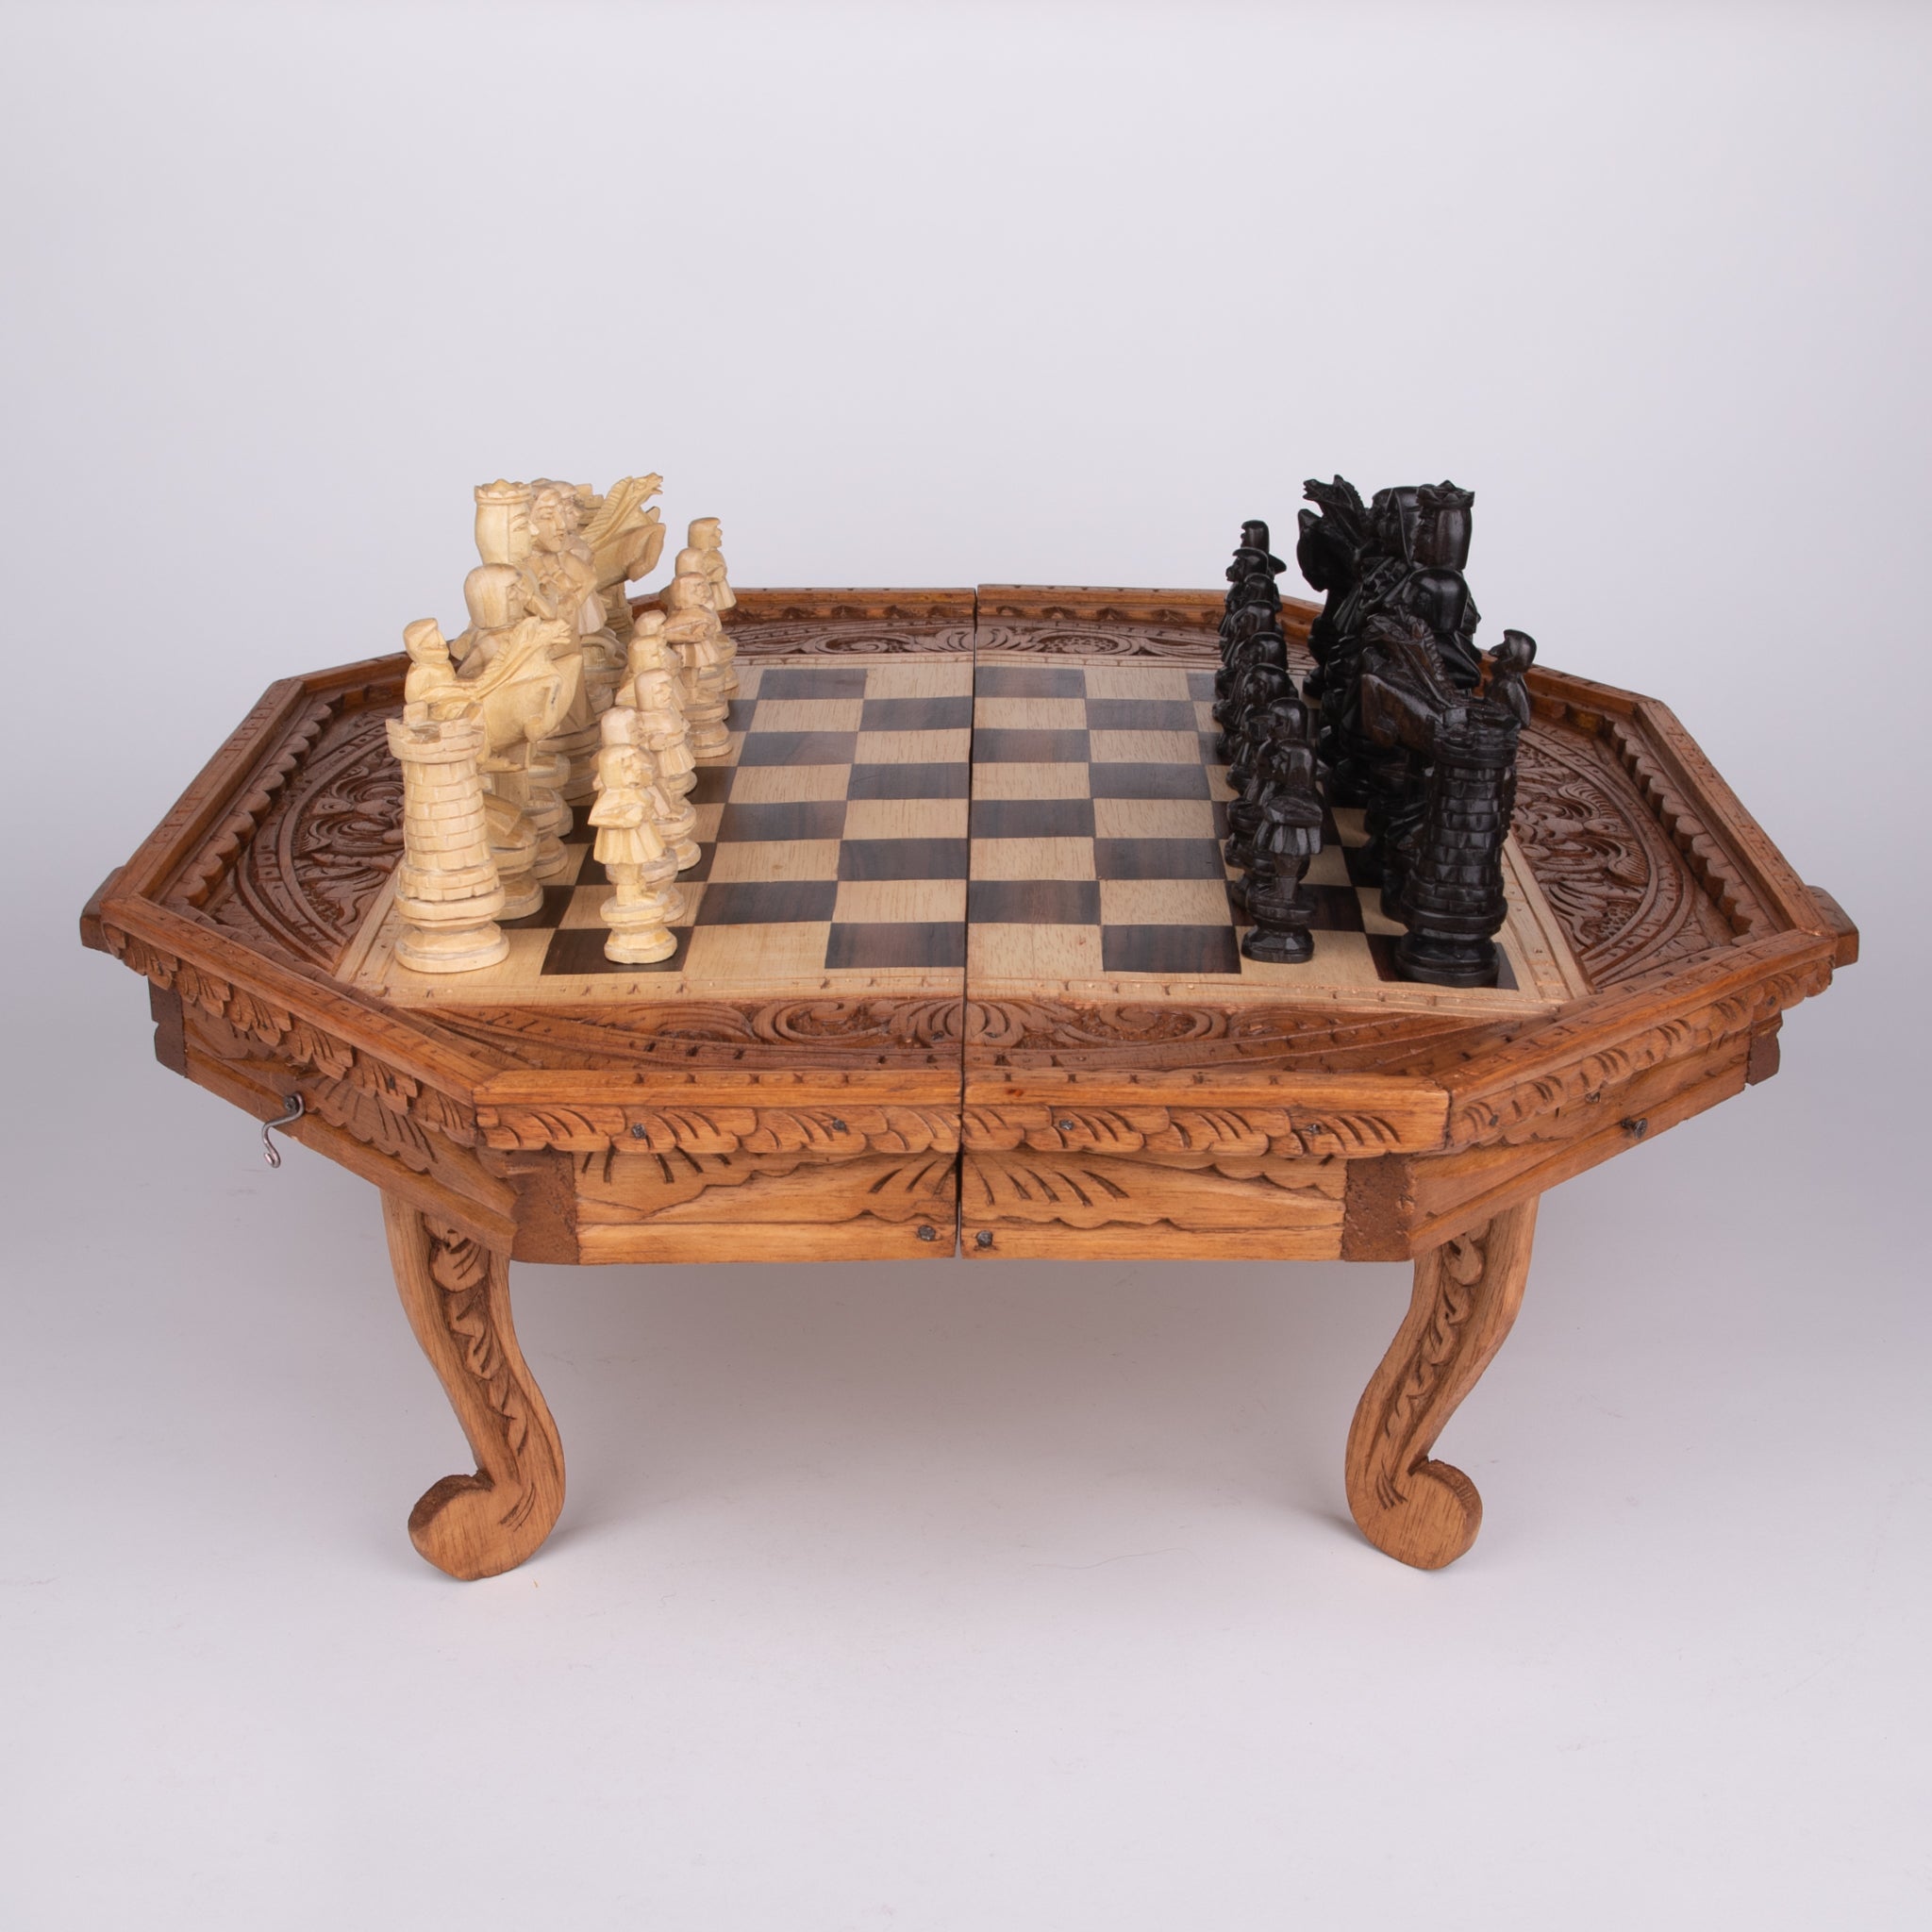 Chess Set Table | Smoked